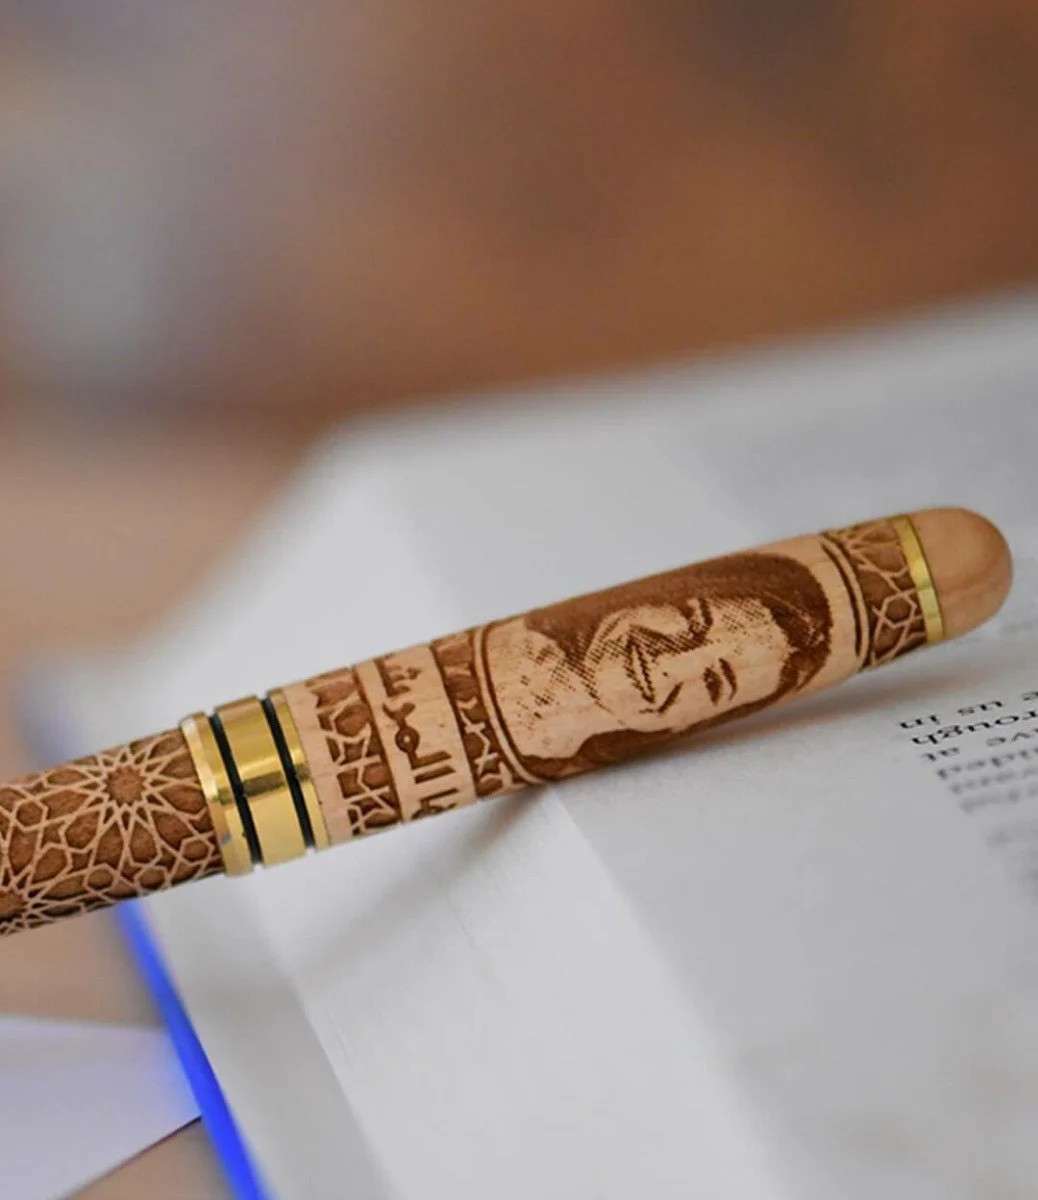 قلم خشبي بصورة حسب الطلب من ليزر جاليري